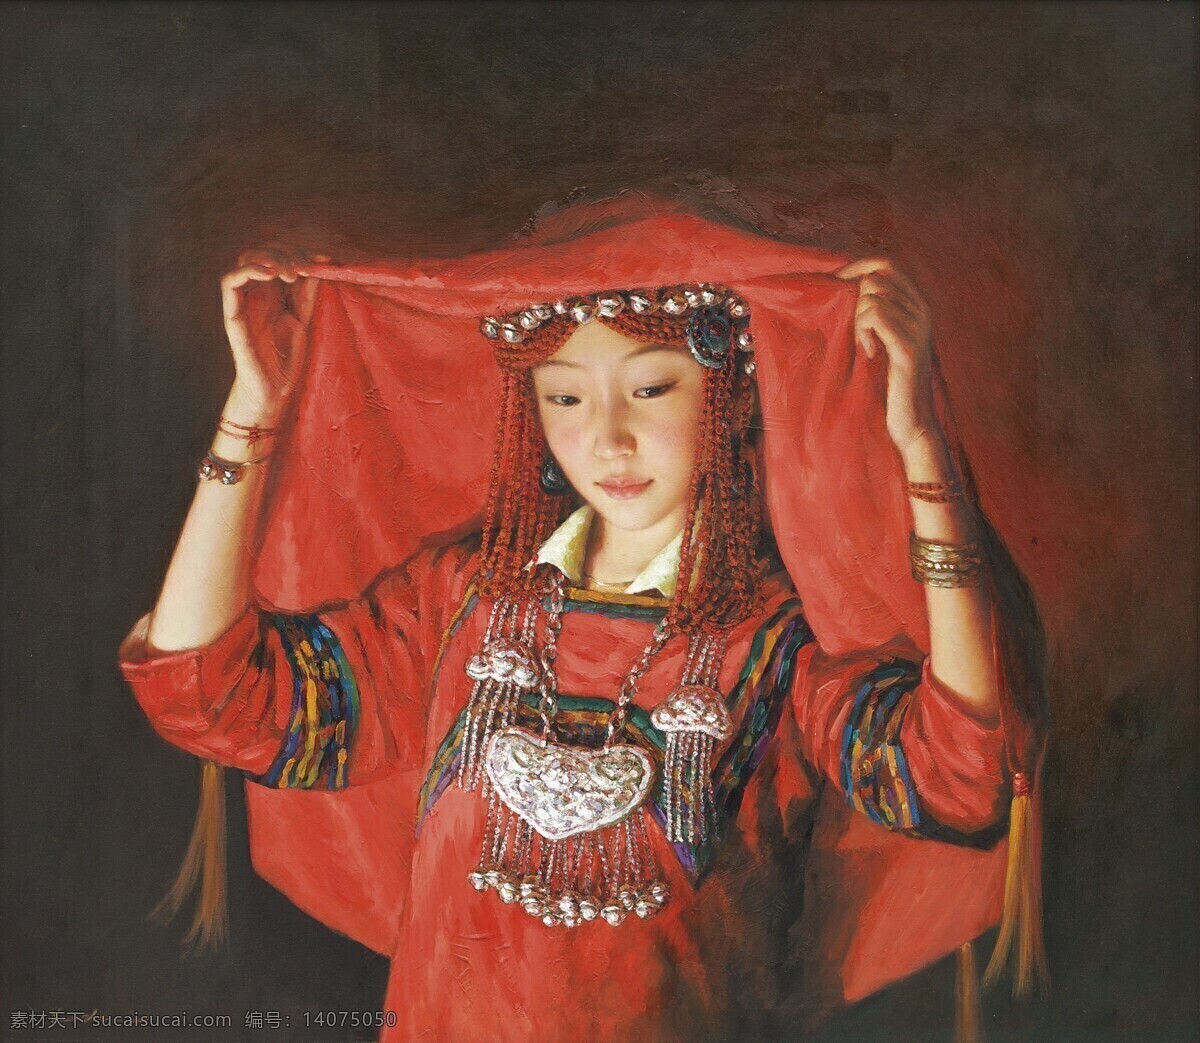 姑娘 红盖头 绘画书法 文化艺术 油画 新嫁娘 设计素材 模板下载 中国少数民族 出嫁 中国现代艺术